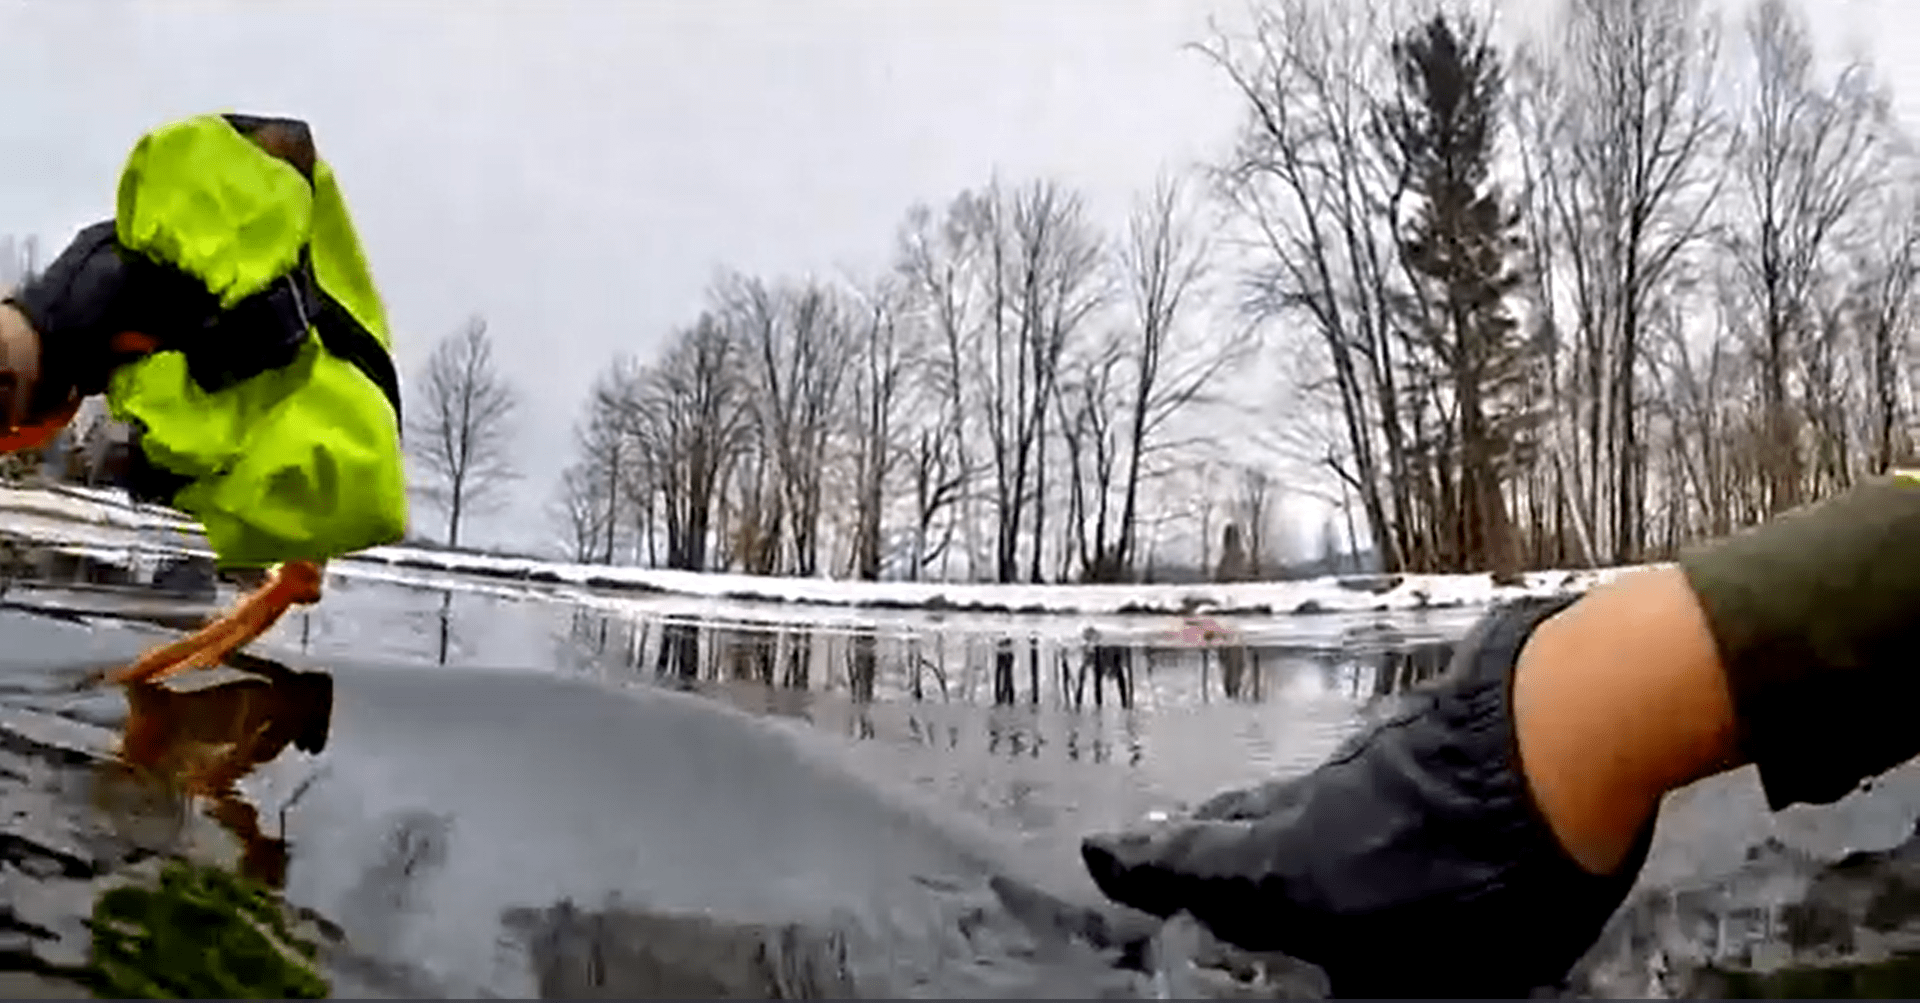 Policie ve Vermontu zachránila 8letou dívku, která se propadla do ledové vody